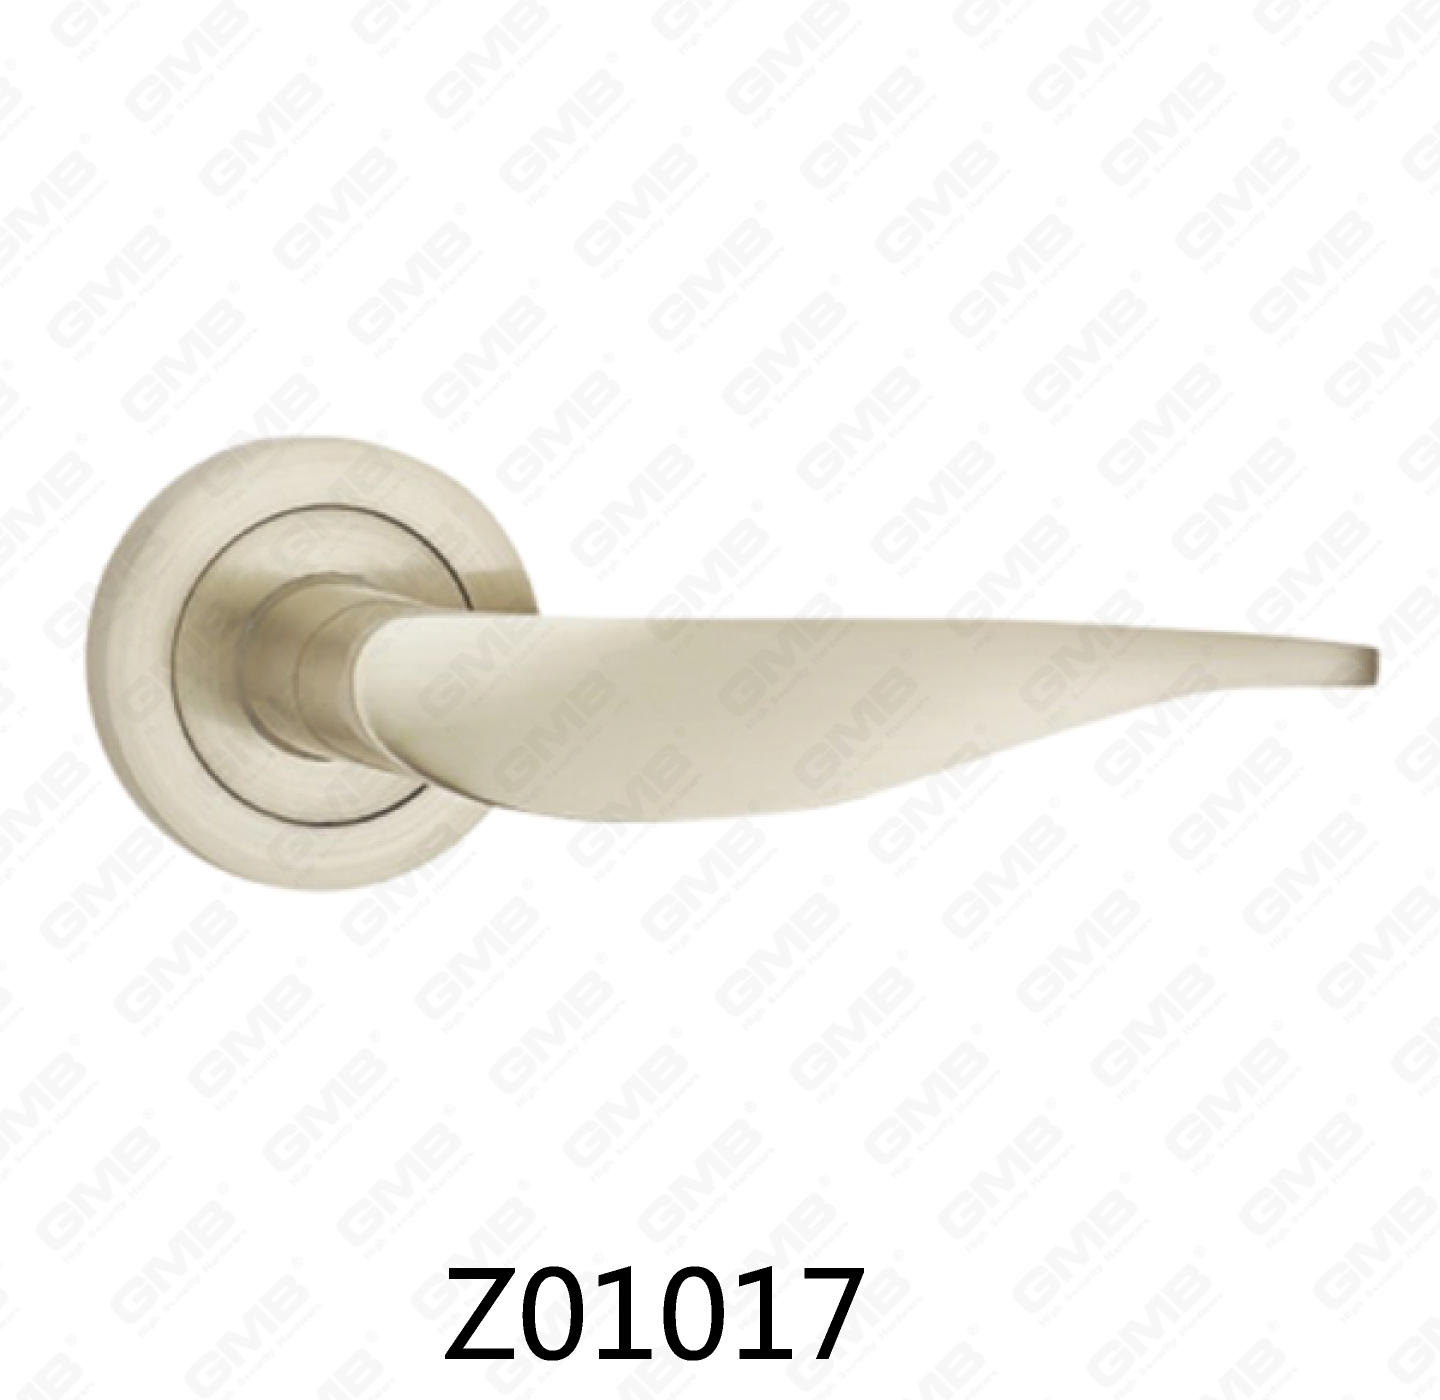 Asa de puerta de roseta de aluminio de aleación de zinc Zamak con roseta redonda (Z01017)